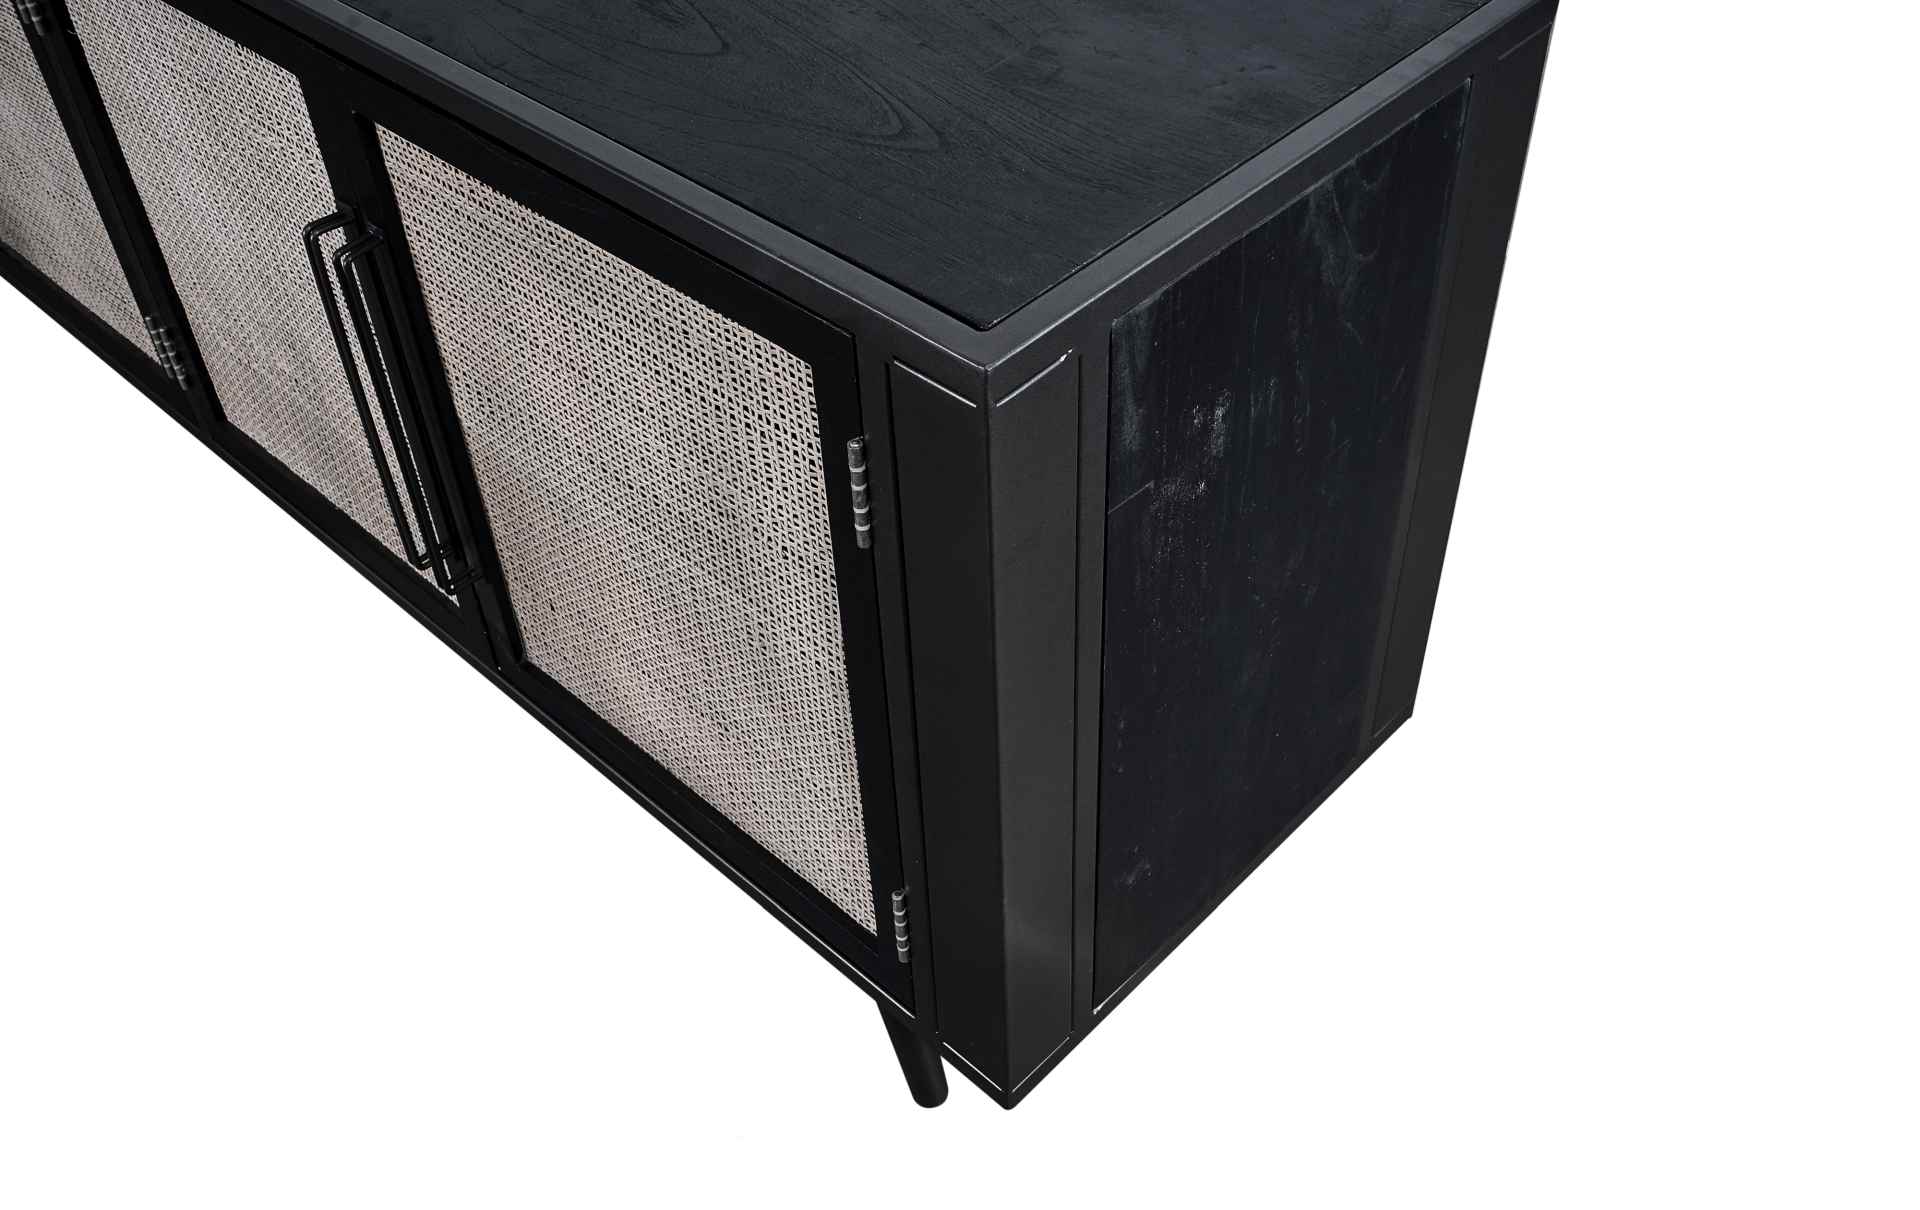 Das TV-Board Nordic Mindi Rattan überzeugt mit seinem Industriellen Design. Gefertigt wurde es aus Rattan und Mindi Holz, welches einen schwarzen Farbton besitzt. Das Gestell ist aus Metall und hat eine schwarze Farbe. Das TV-Board verfügt über vier Türen